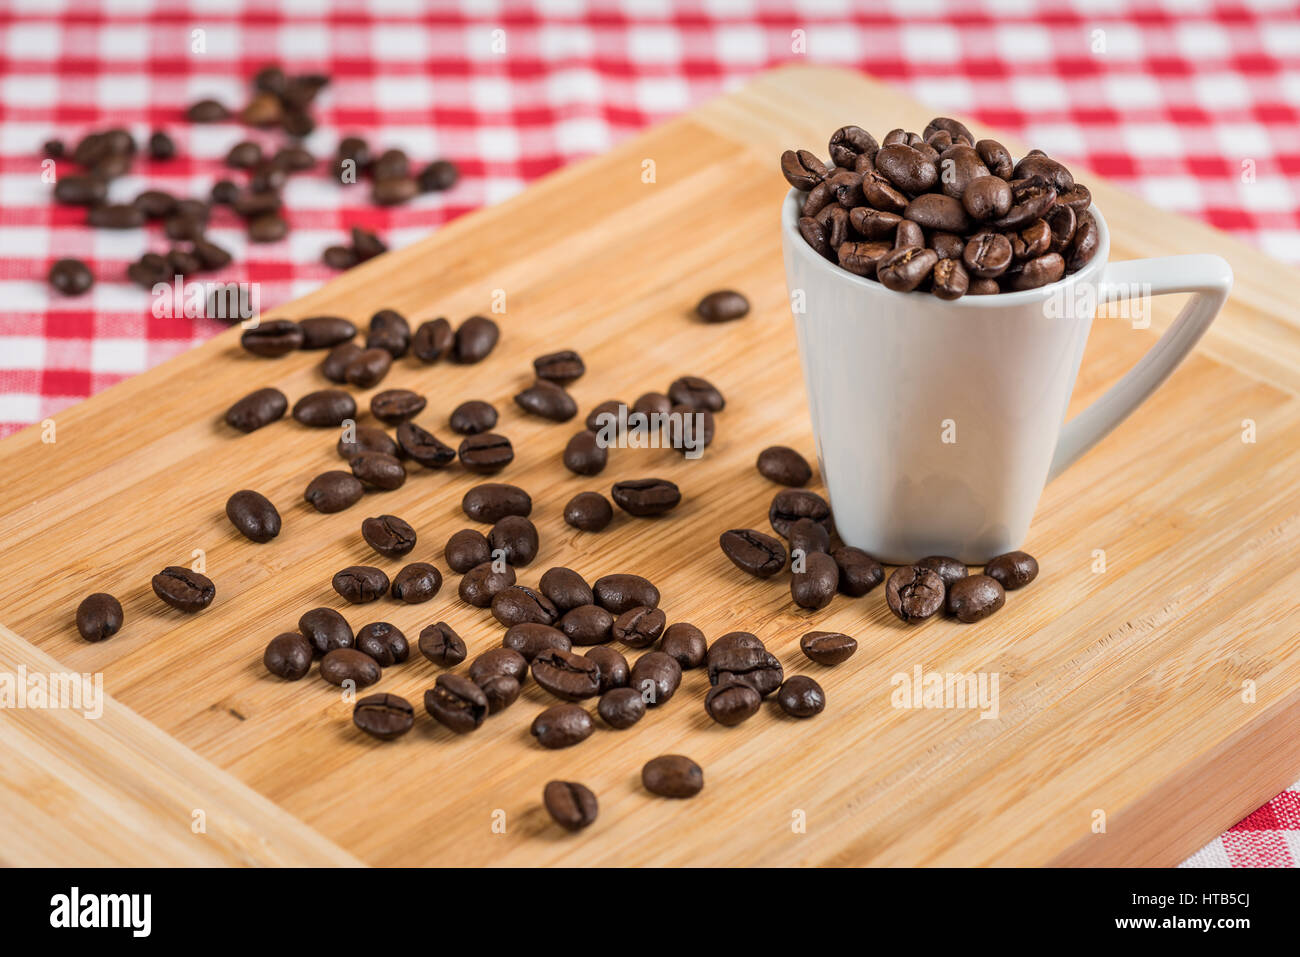 Eine weiße Kaffeetasse mit Kaffeebohnen auf Holz und eine rot-weiß karierte Tischdecke im Hintergrund. Stockfoto